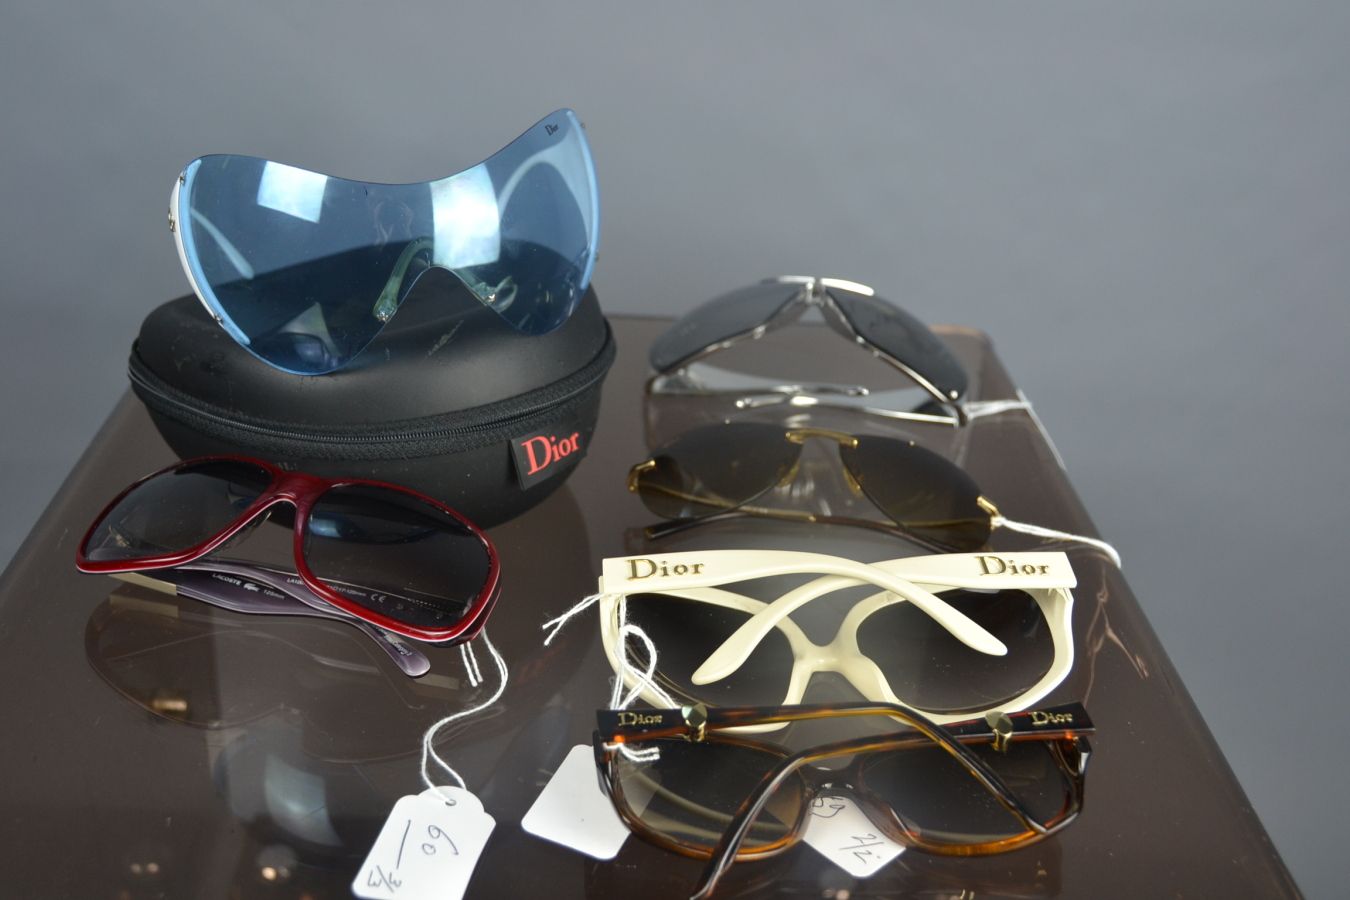 Null *很多眼镜，包括:

DIOR

- 一对白色和蓝色的塑料太阳镜和它的盒子，蓝色的镜片（纤维，磨损）。

DIOR

- 两副太阳镜，一副是白色塑料的&hellip;